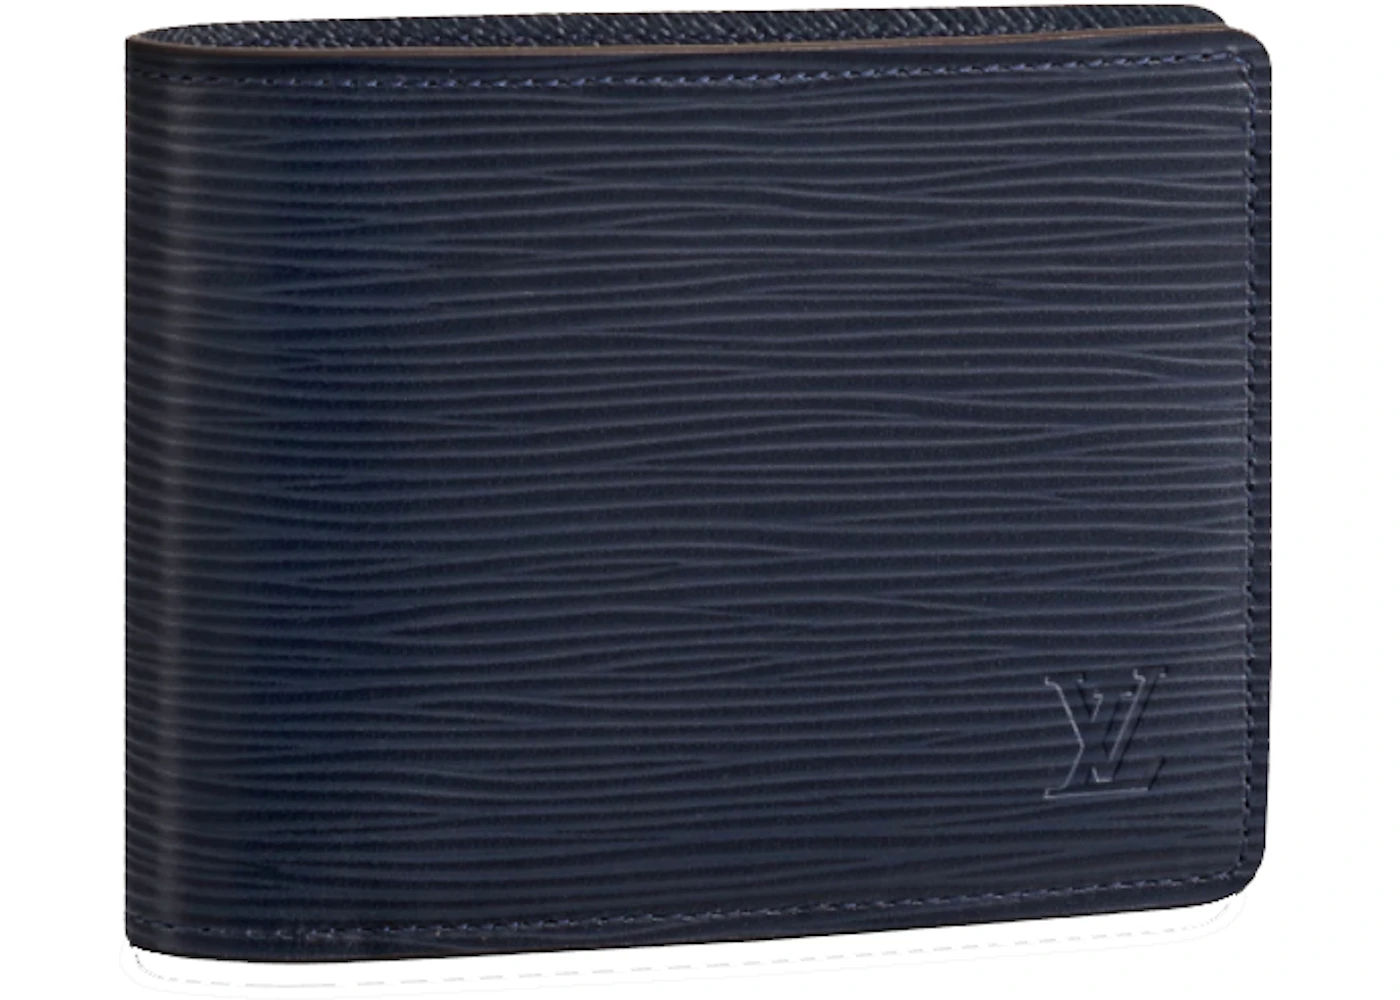 lv epi blue wallet